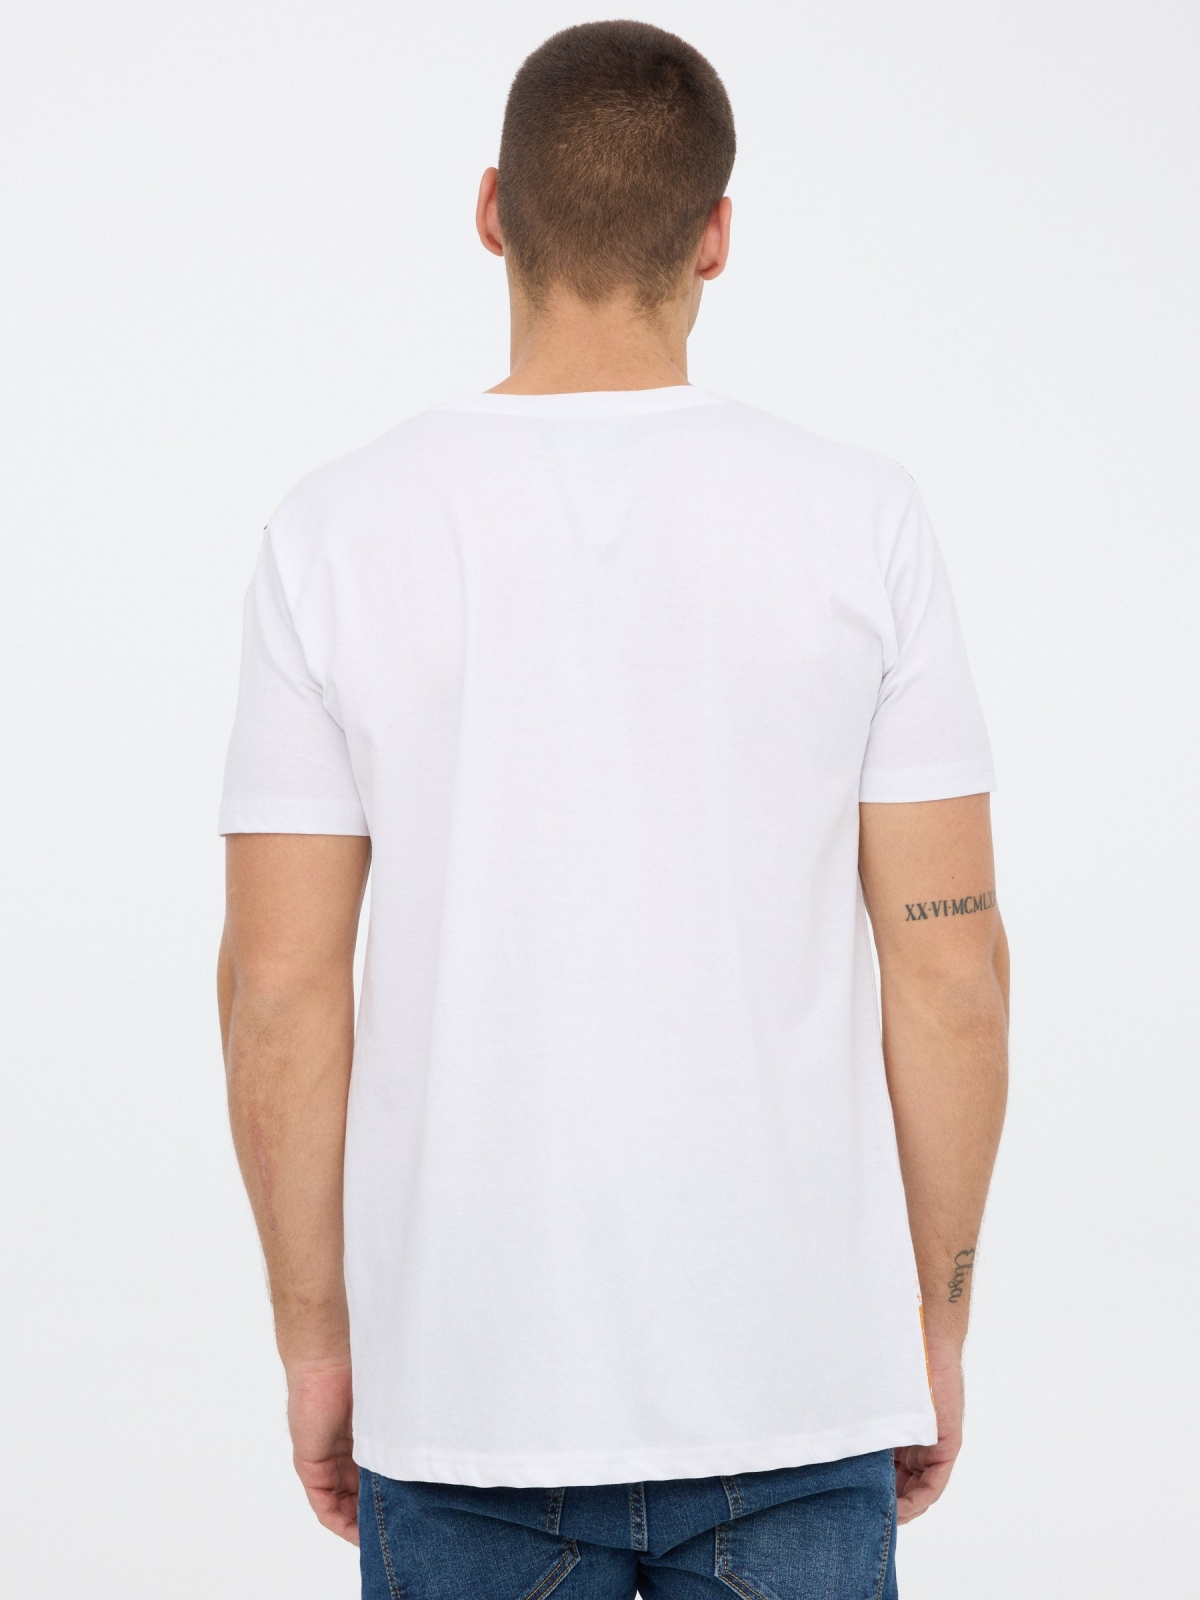 T-shirt impressa INSIDE branco vista meia traseira